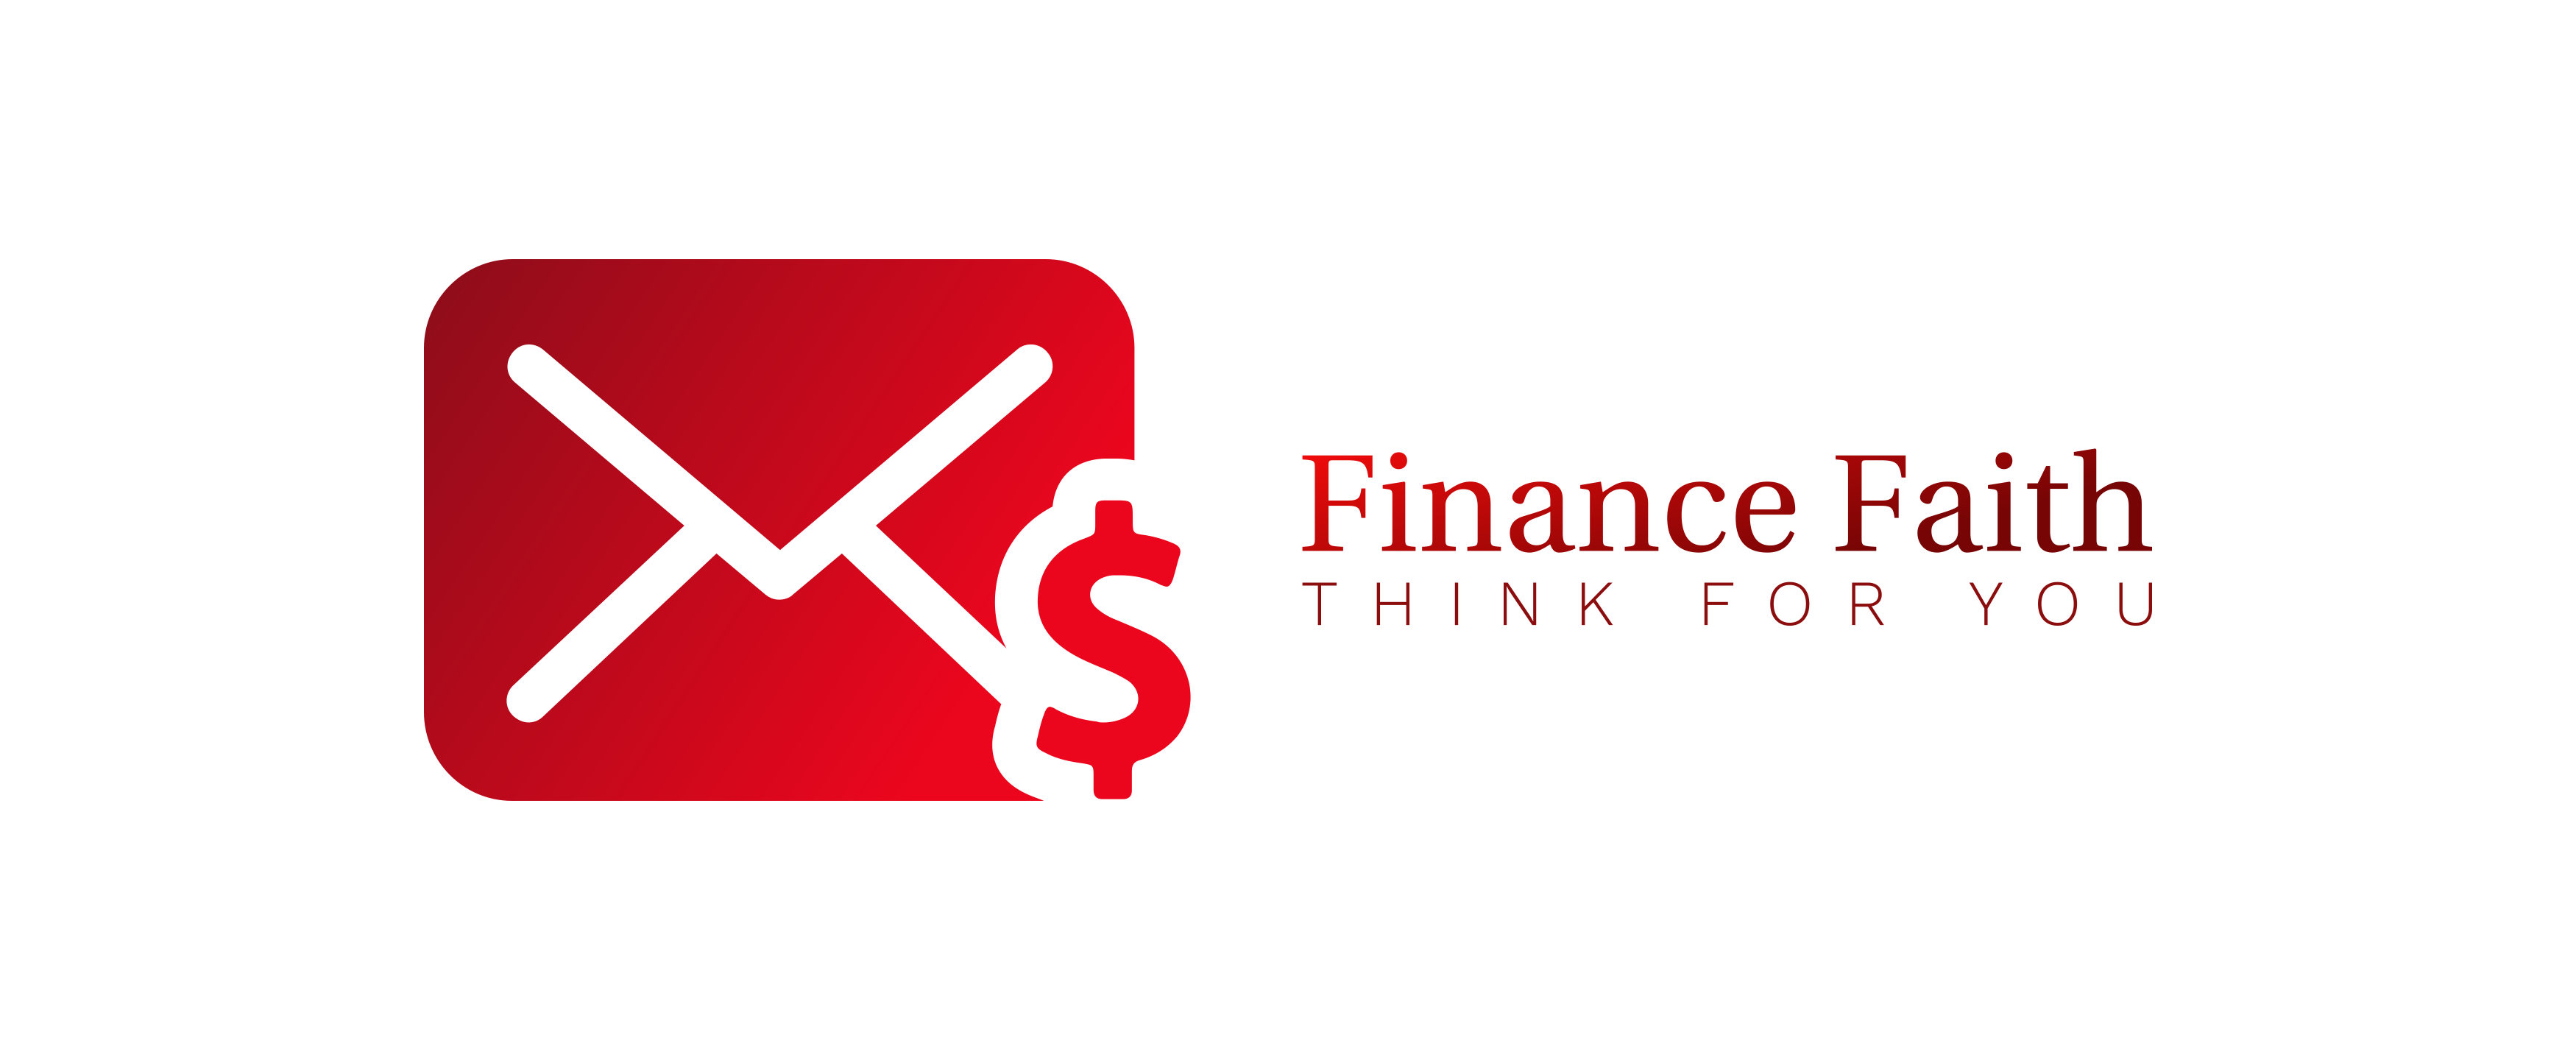 Finance Faith